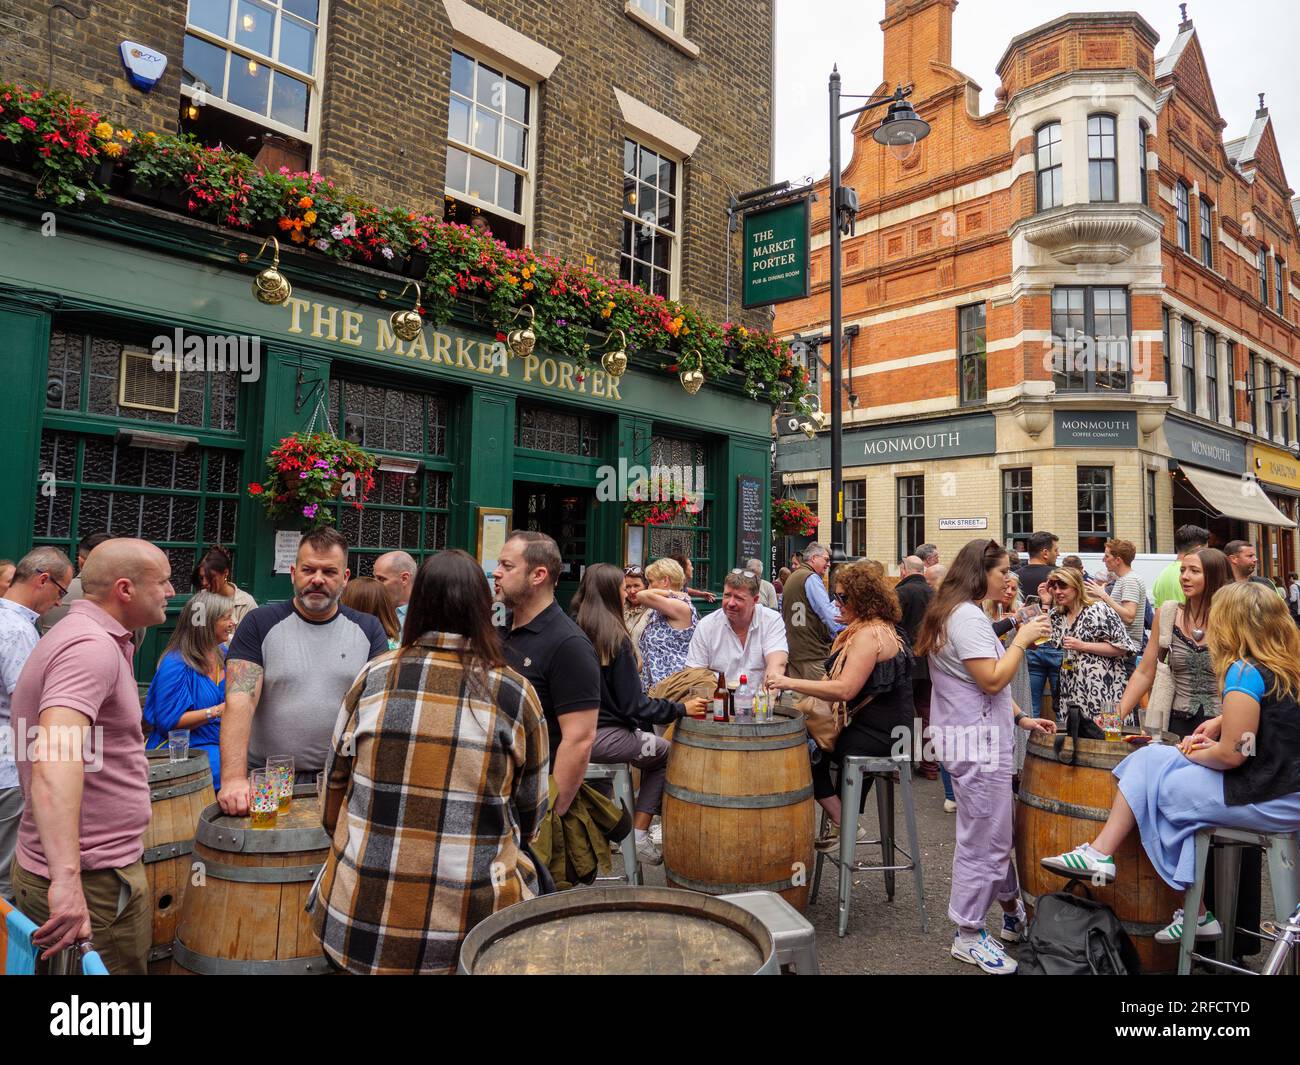 Les gens boivent devant le pub The Market porter à côté du Borough Market, Londres, Royaume-Uni Banque D'Images